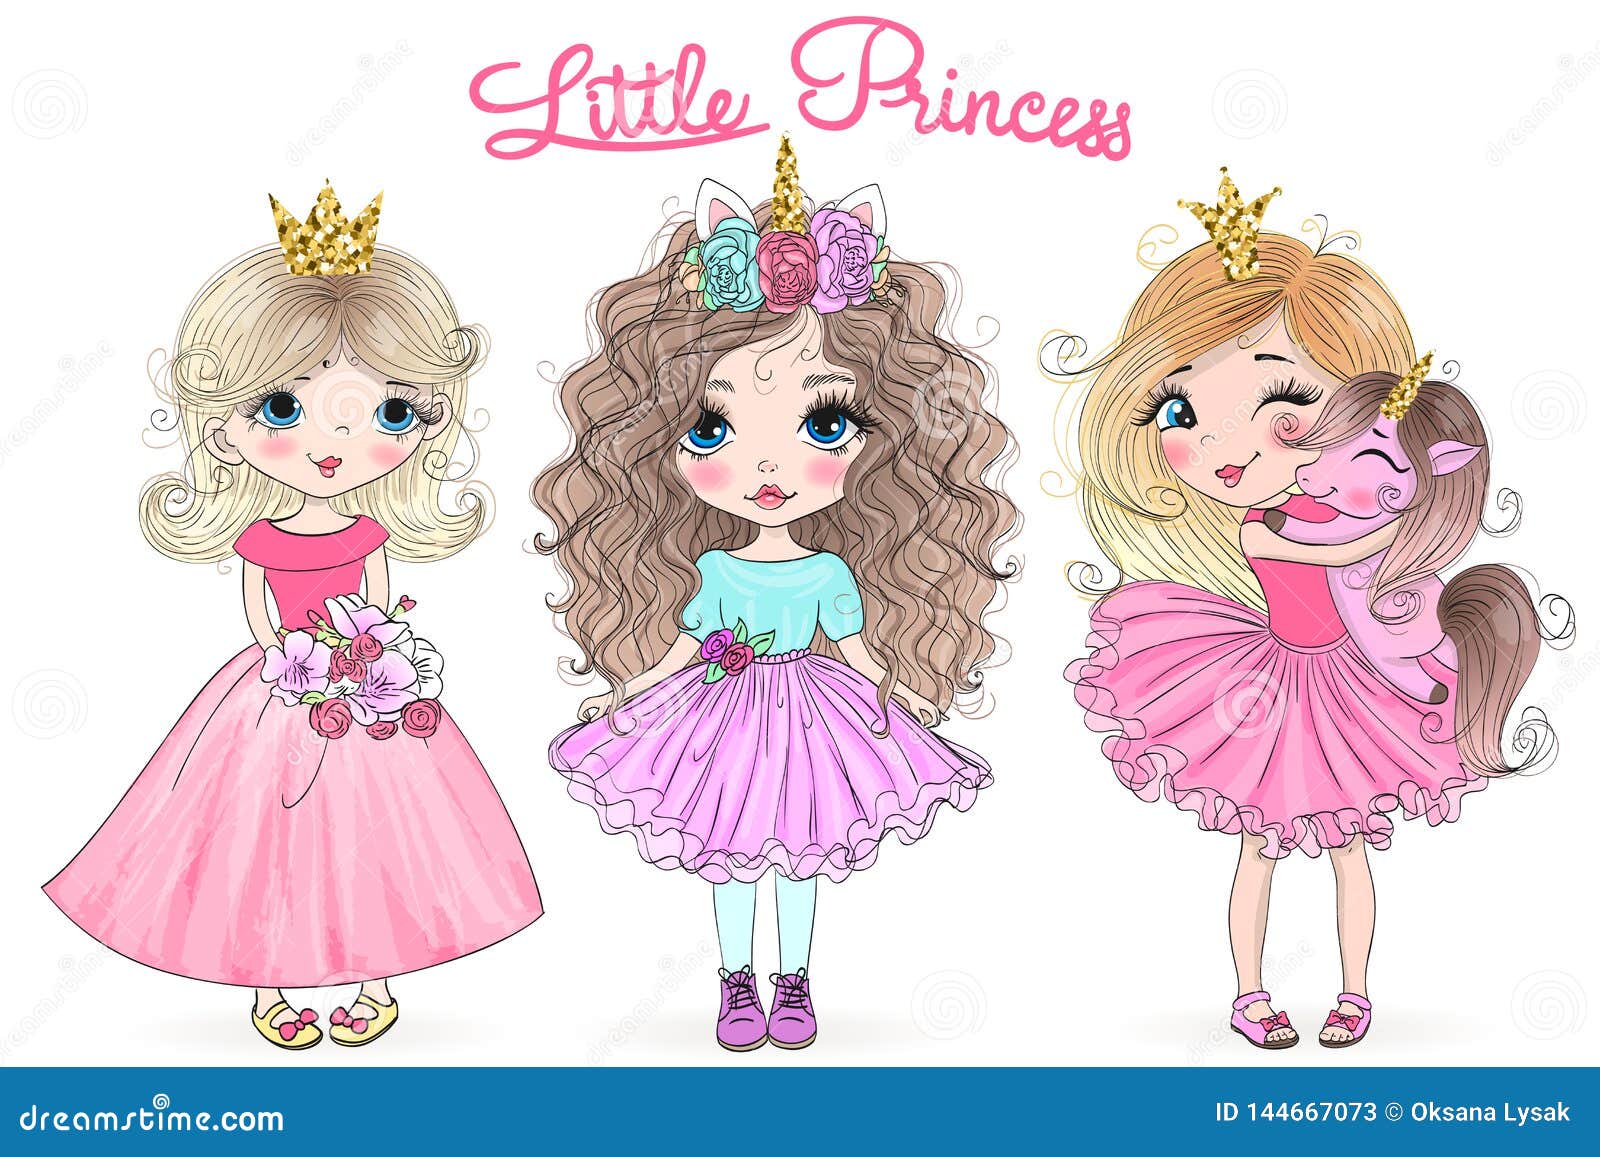 Нарисованная маленькая принцесса с короной